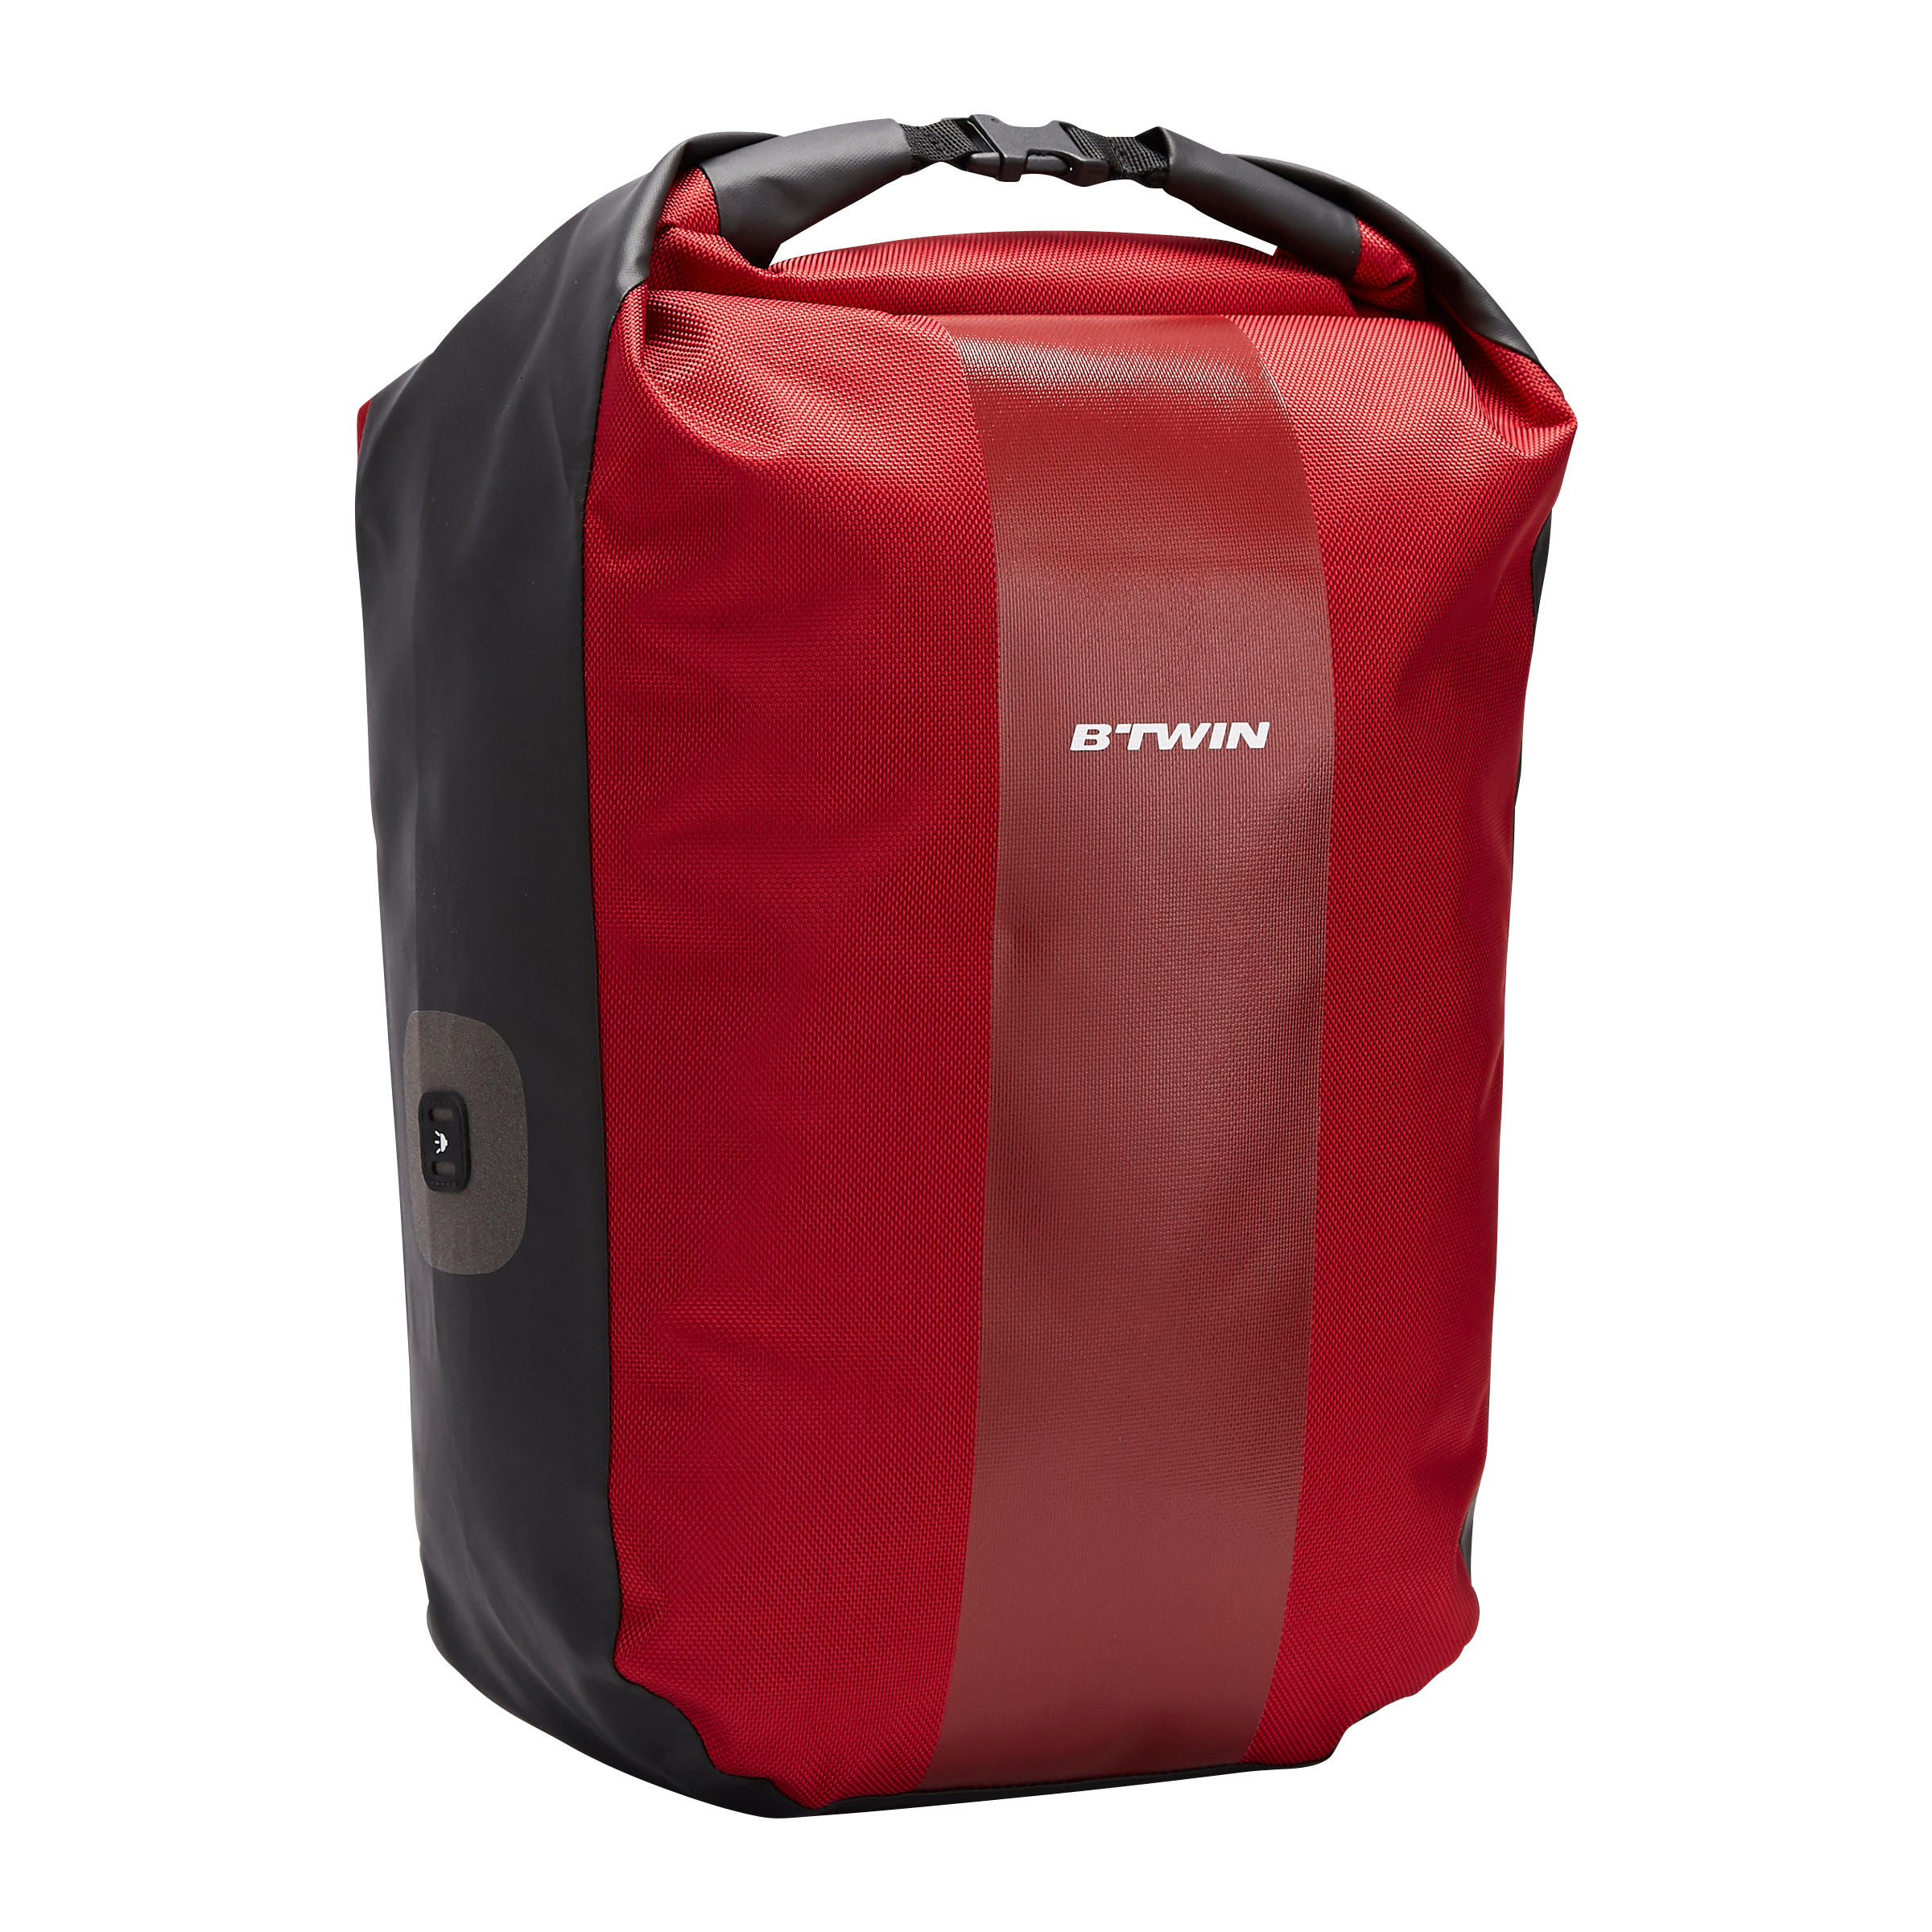 Dry bag waterproof bag black 10l | Online Shop Gonser - Sicher & Günstig  einkaufen